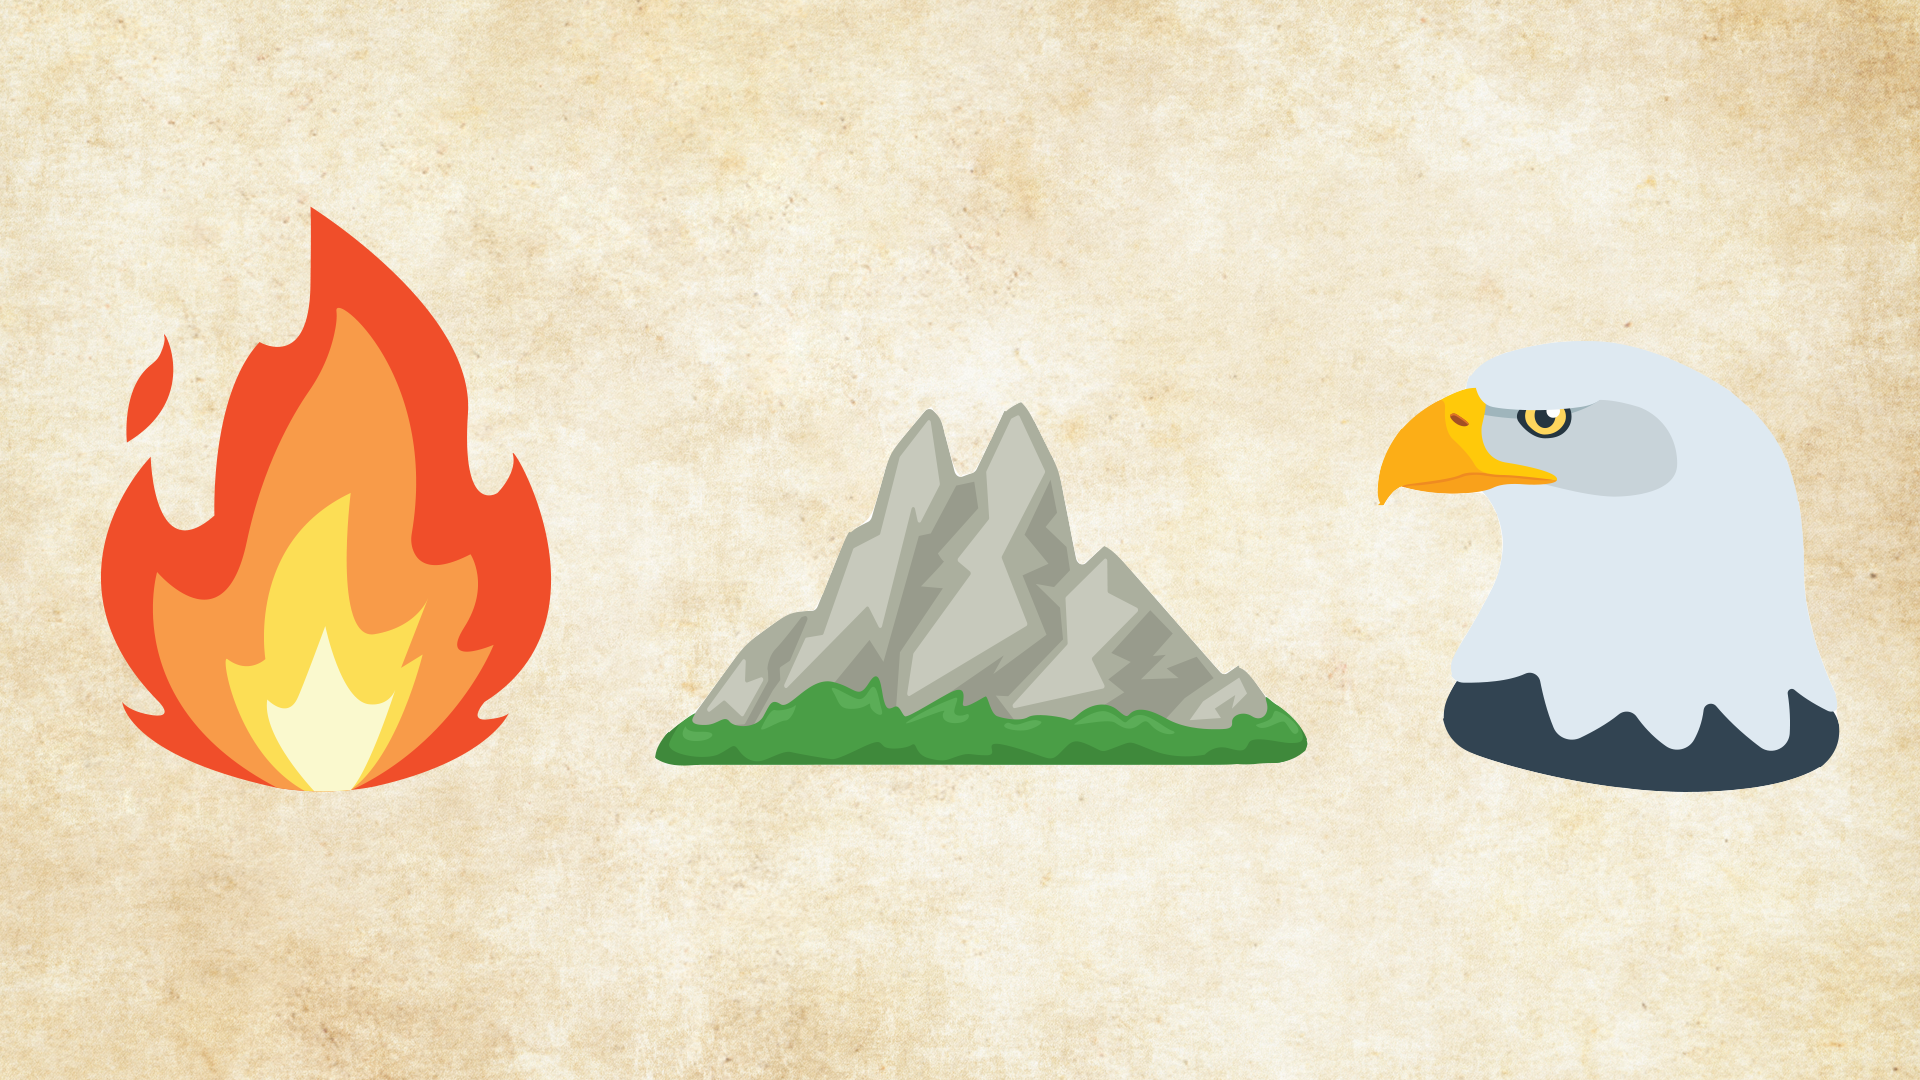 Fire, mountain, eagle